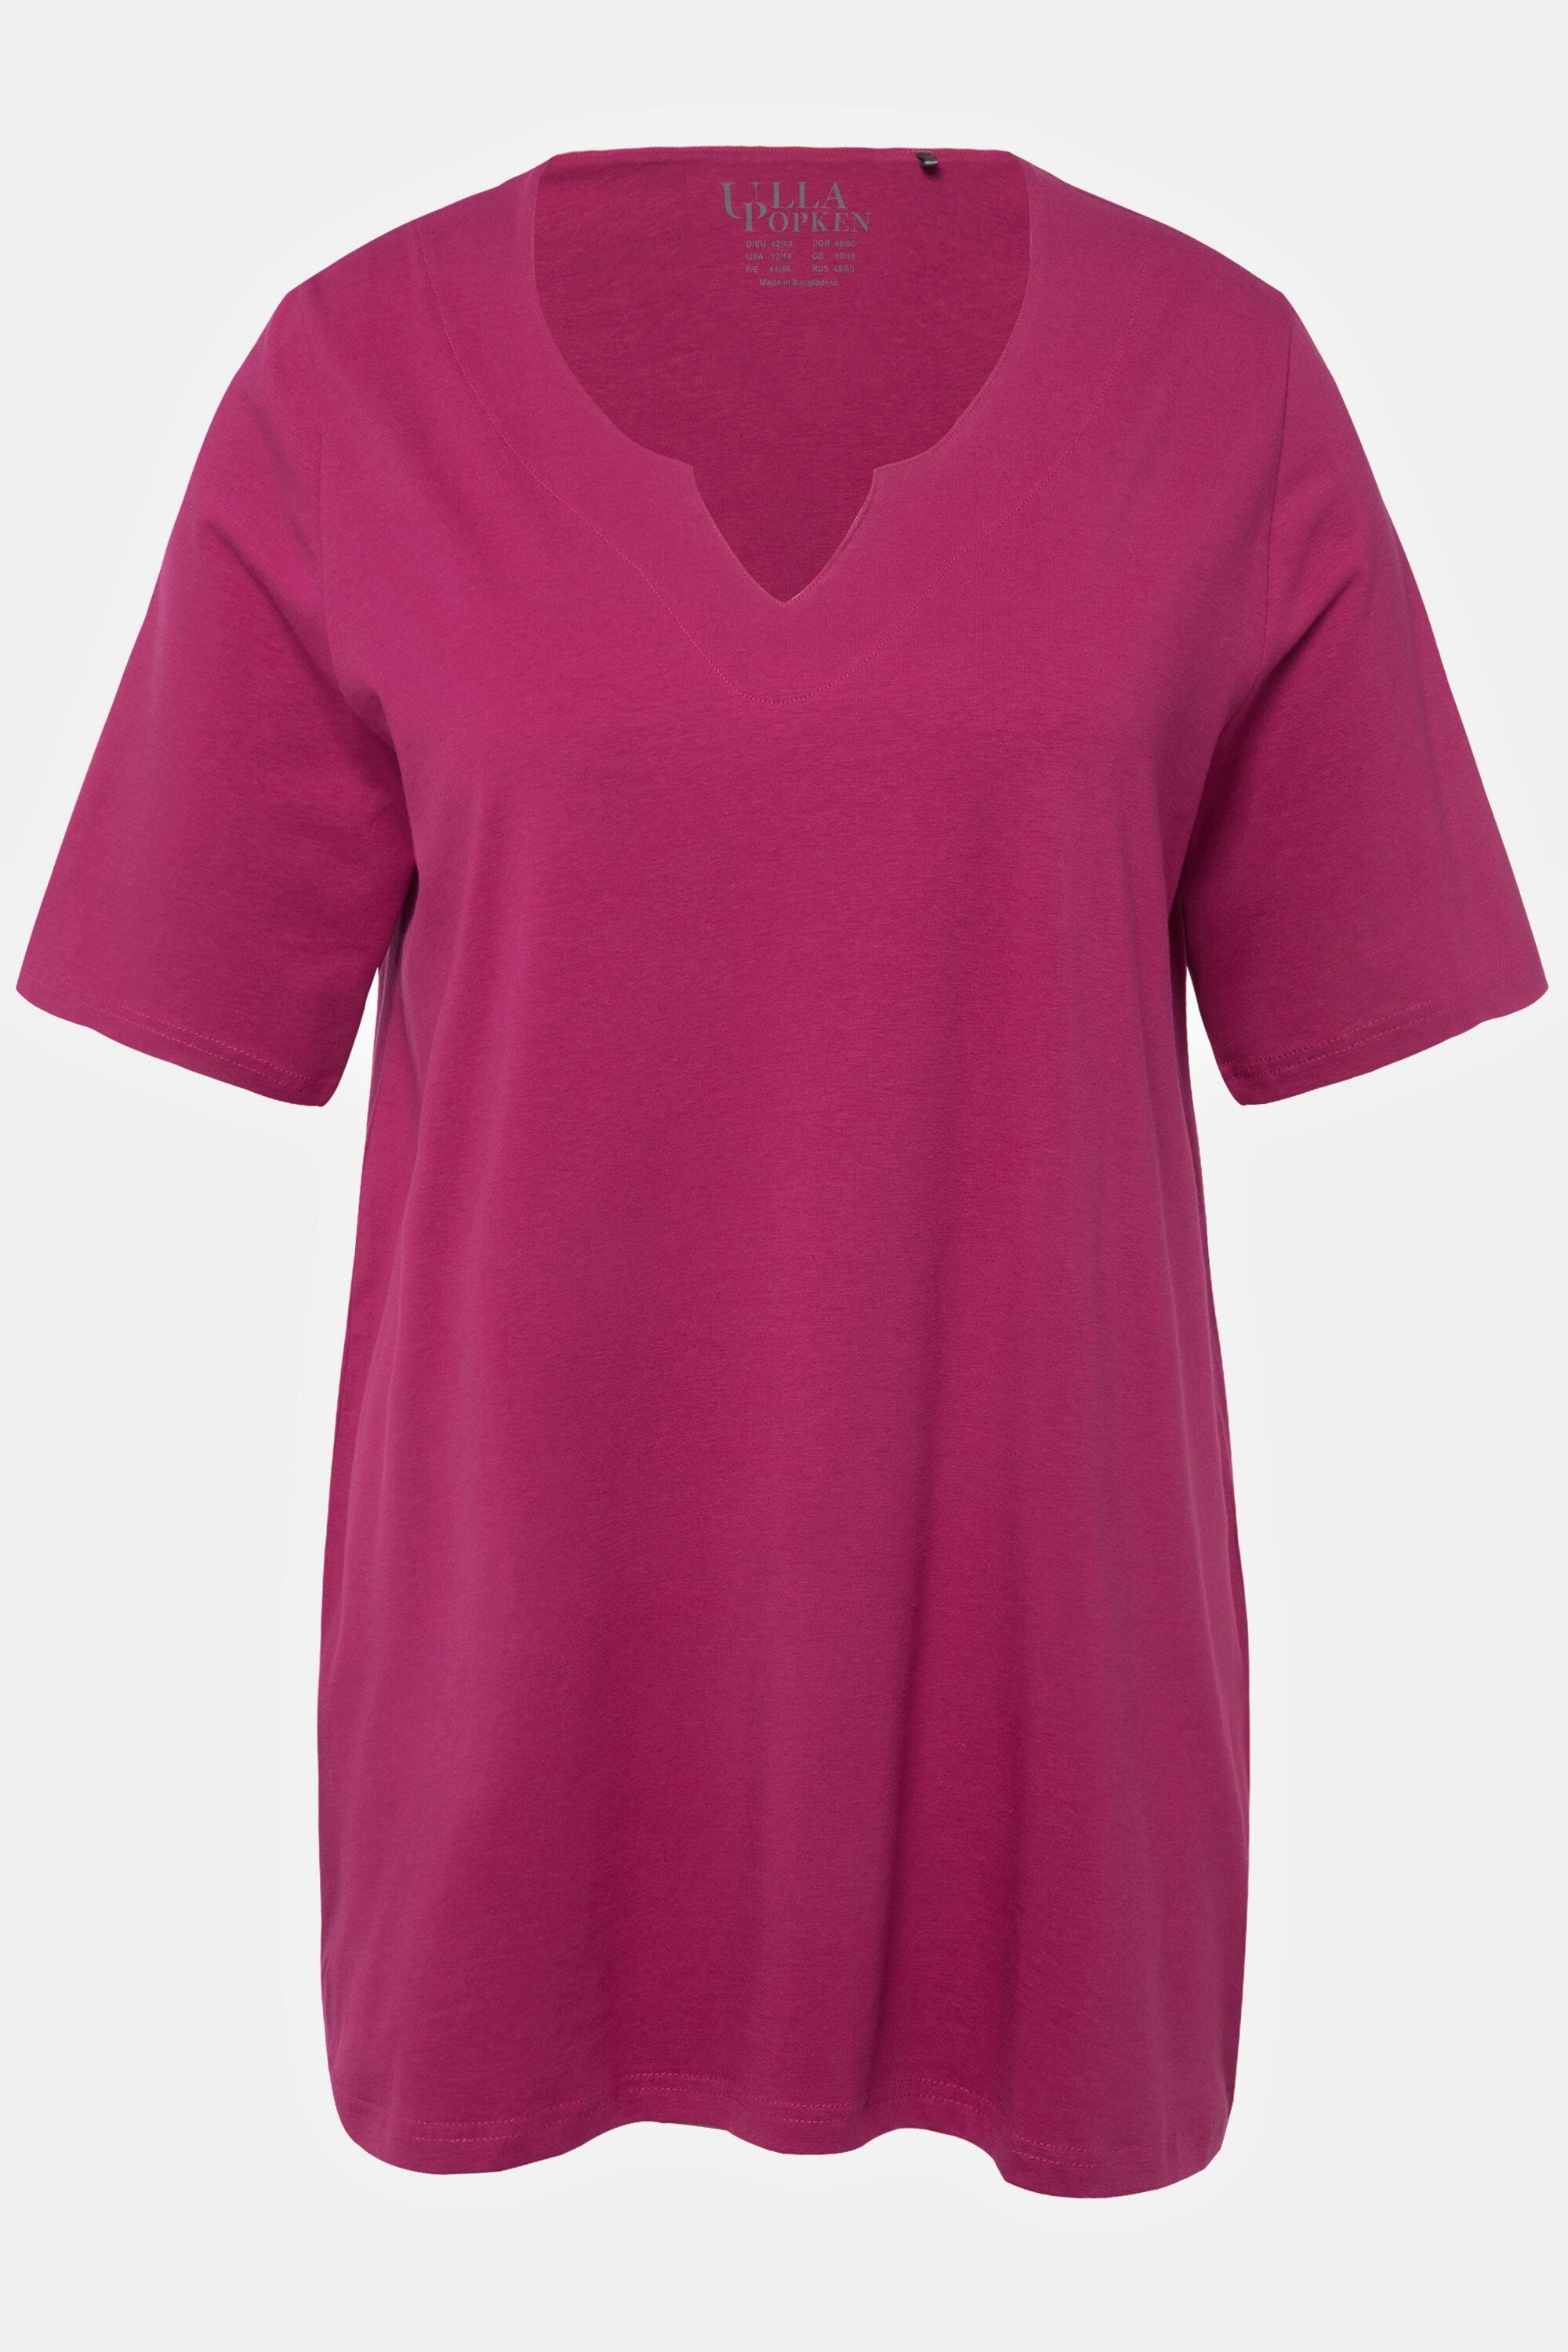 Ulla Popken Tunika-Ausschnitt purpur A-Linie Rundhalsshirt dunkles Halbarm T-Shirt